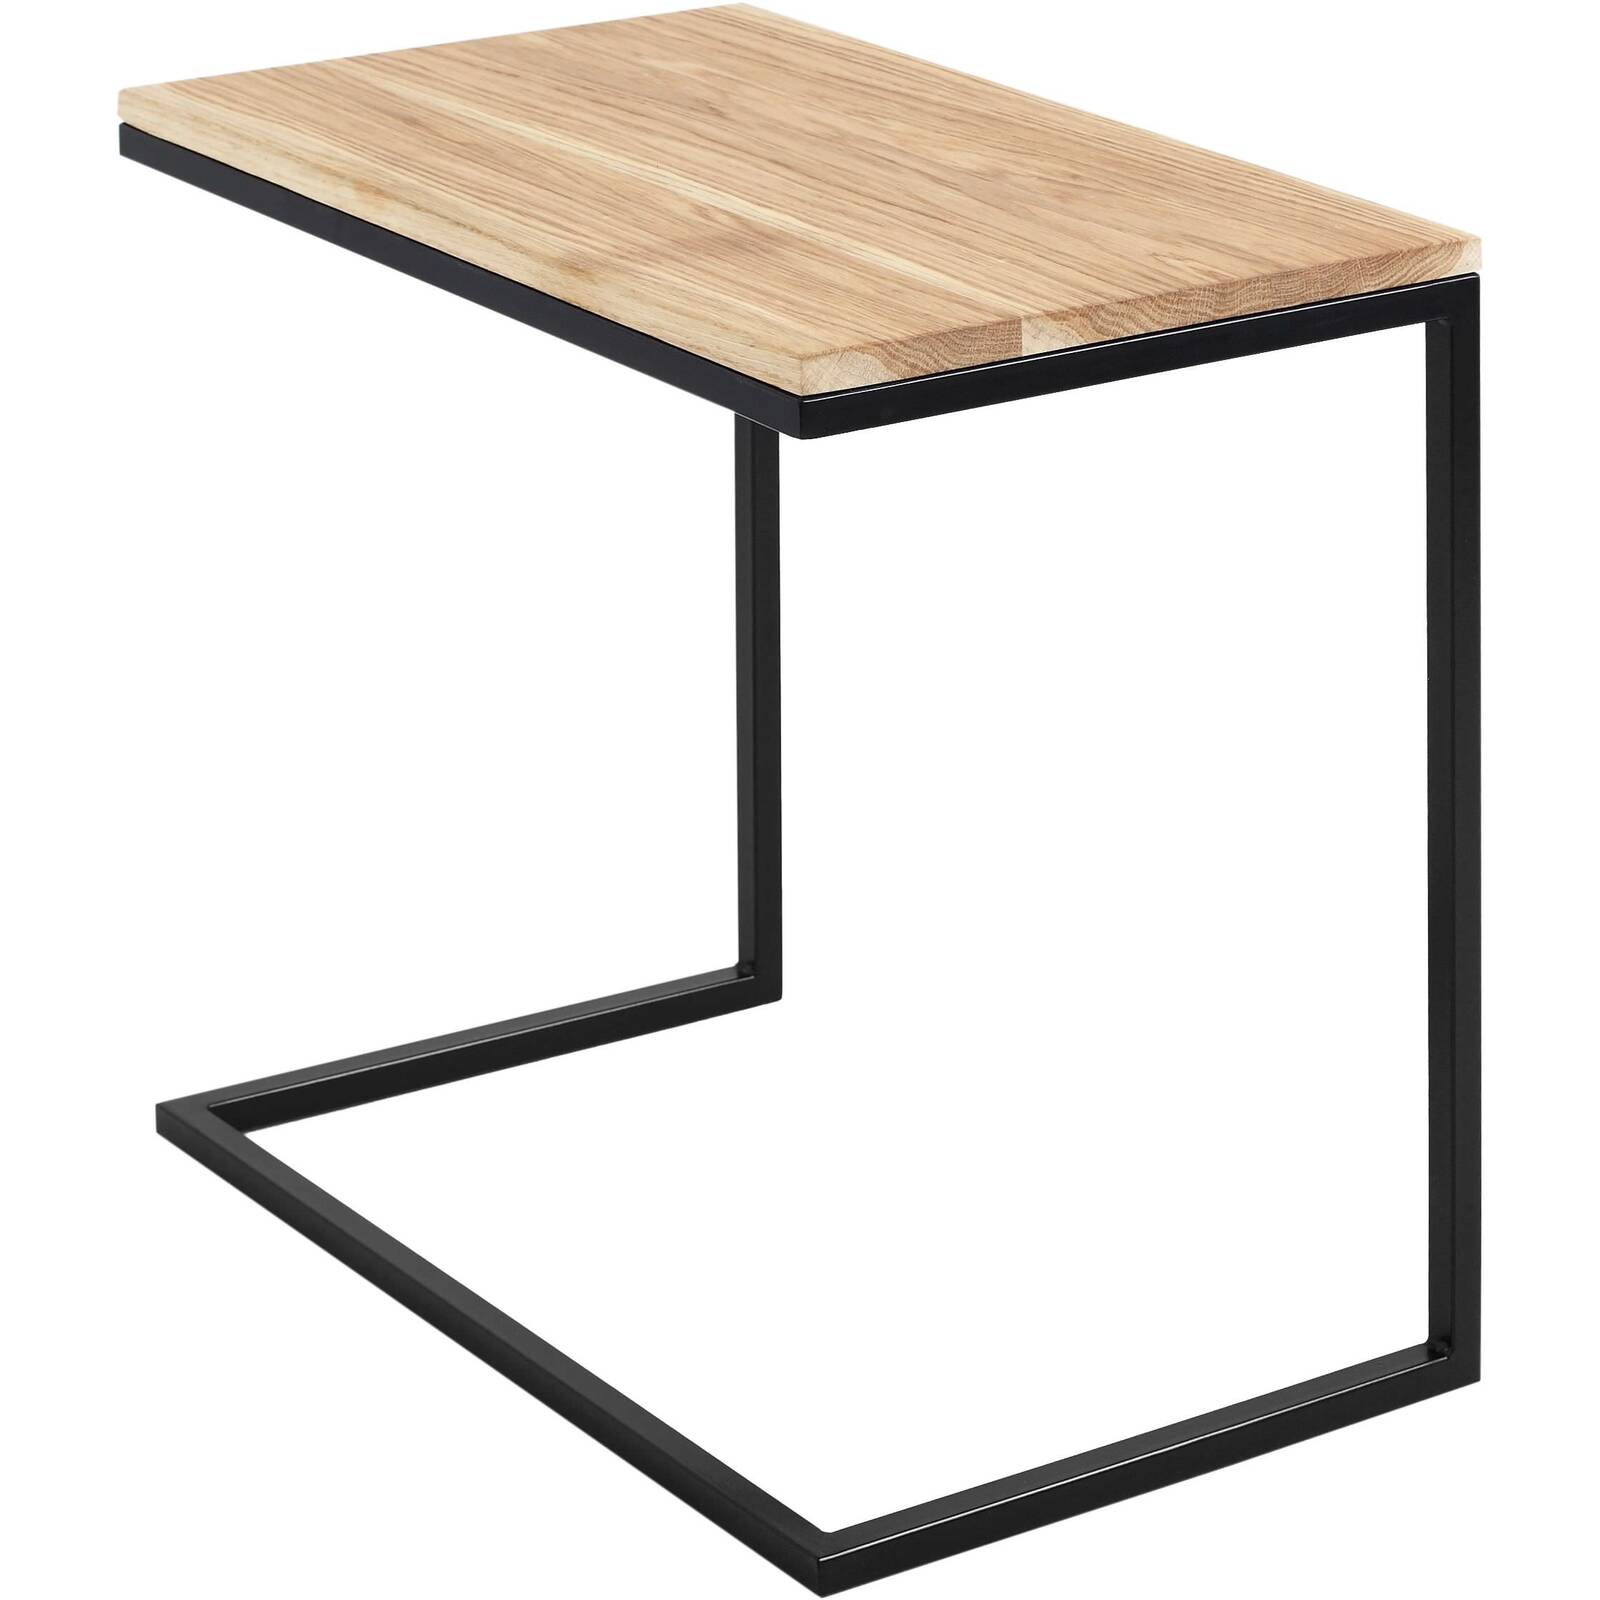 Table basse rectangulaire mÃ©tal noir et bois chene massif